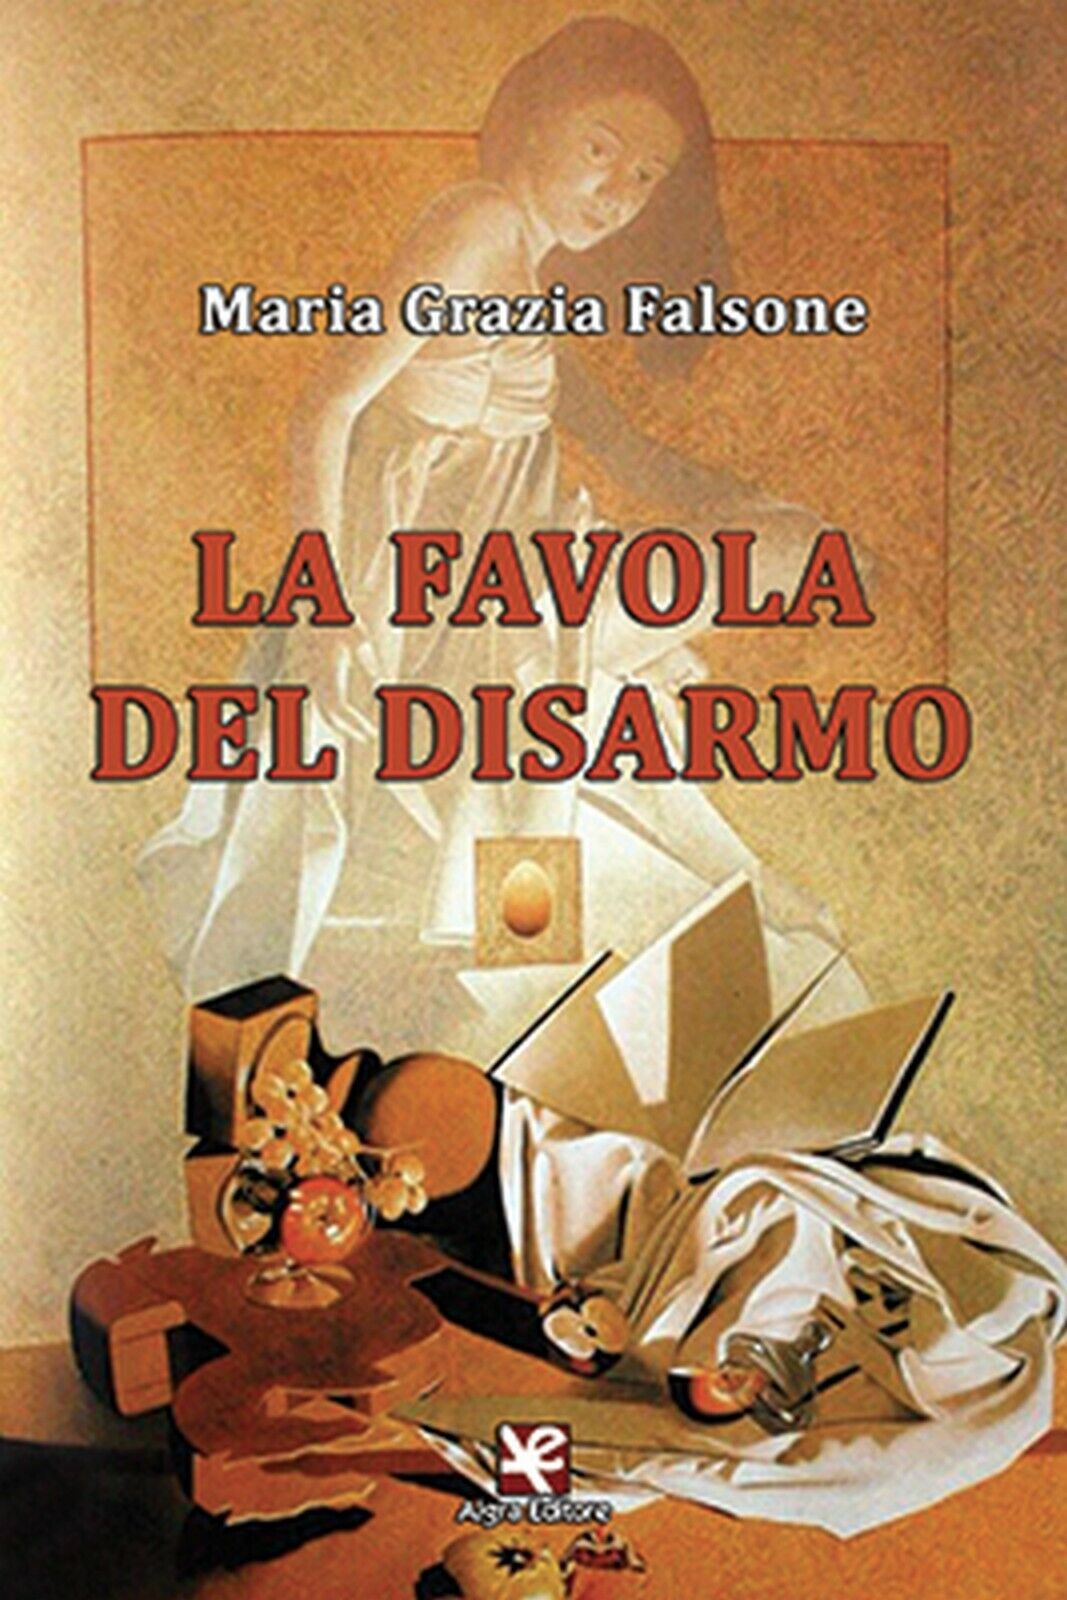 La favola del disarmo  di Maria Grazia Falsone,  Algra Editore